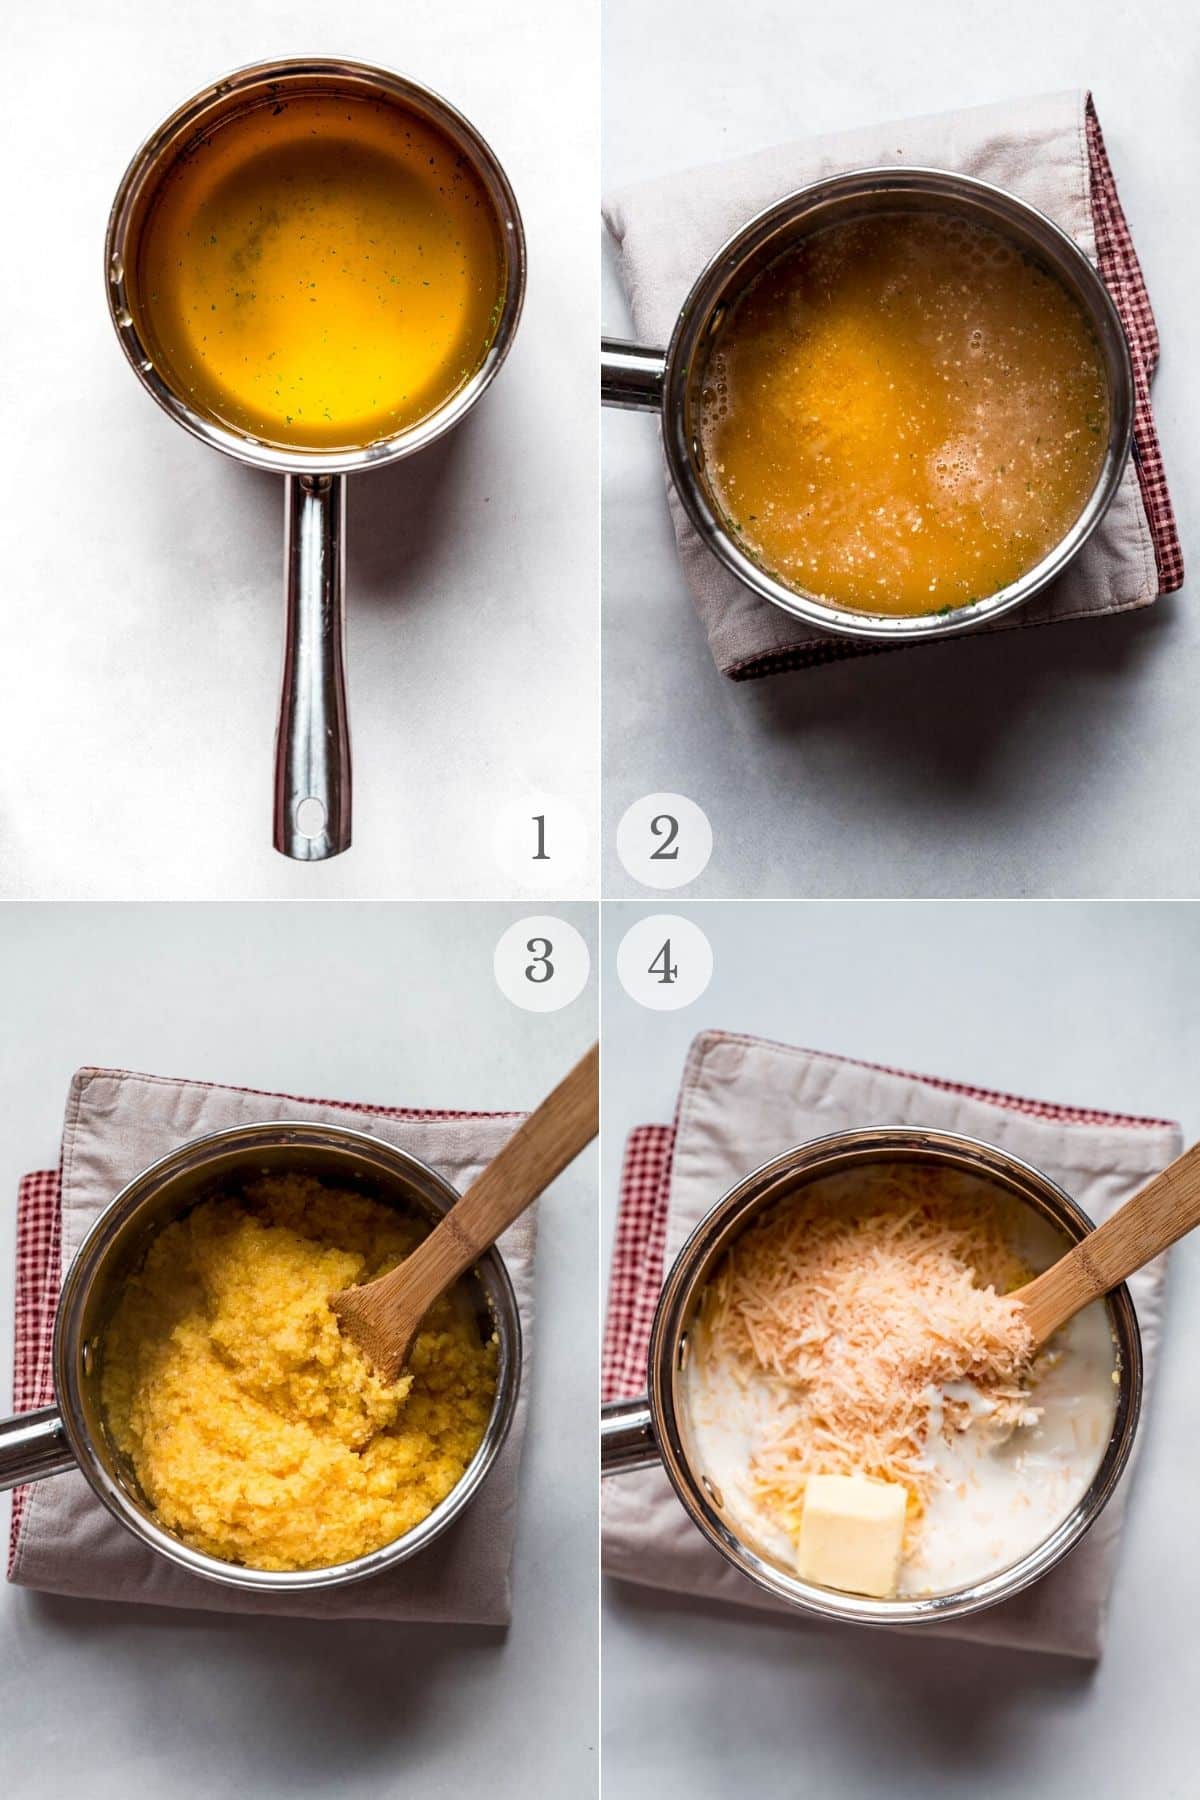 shrimp and polenta recipe steps 1-4.